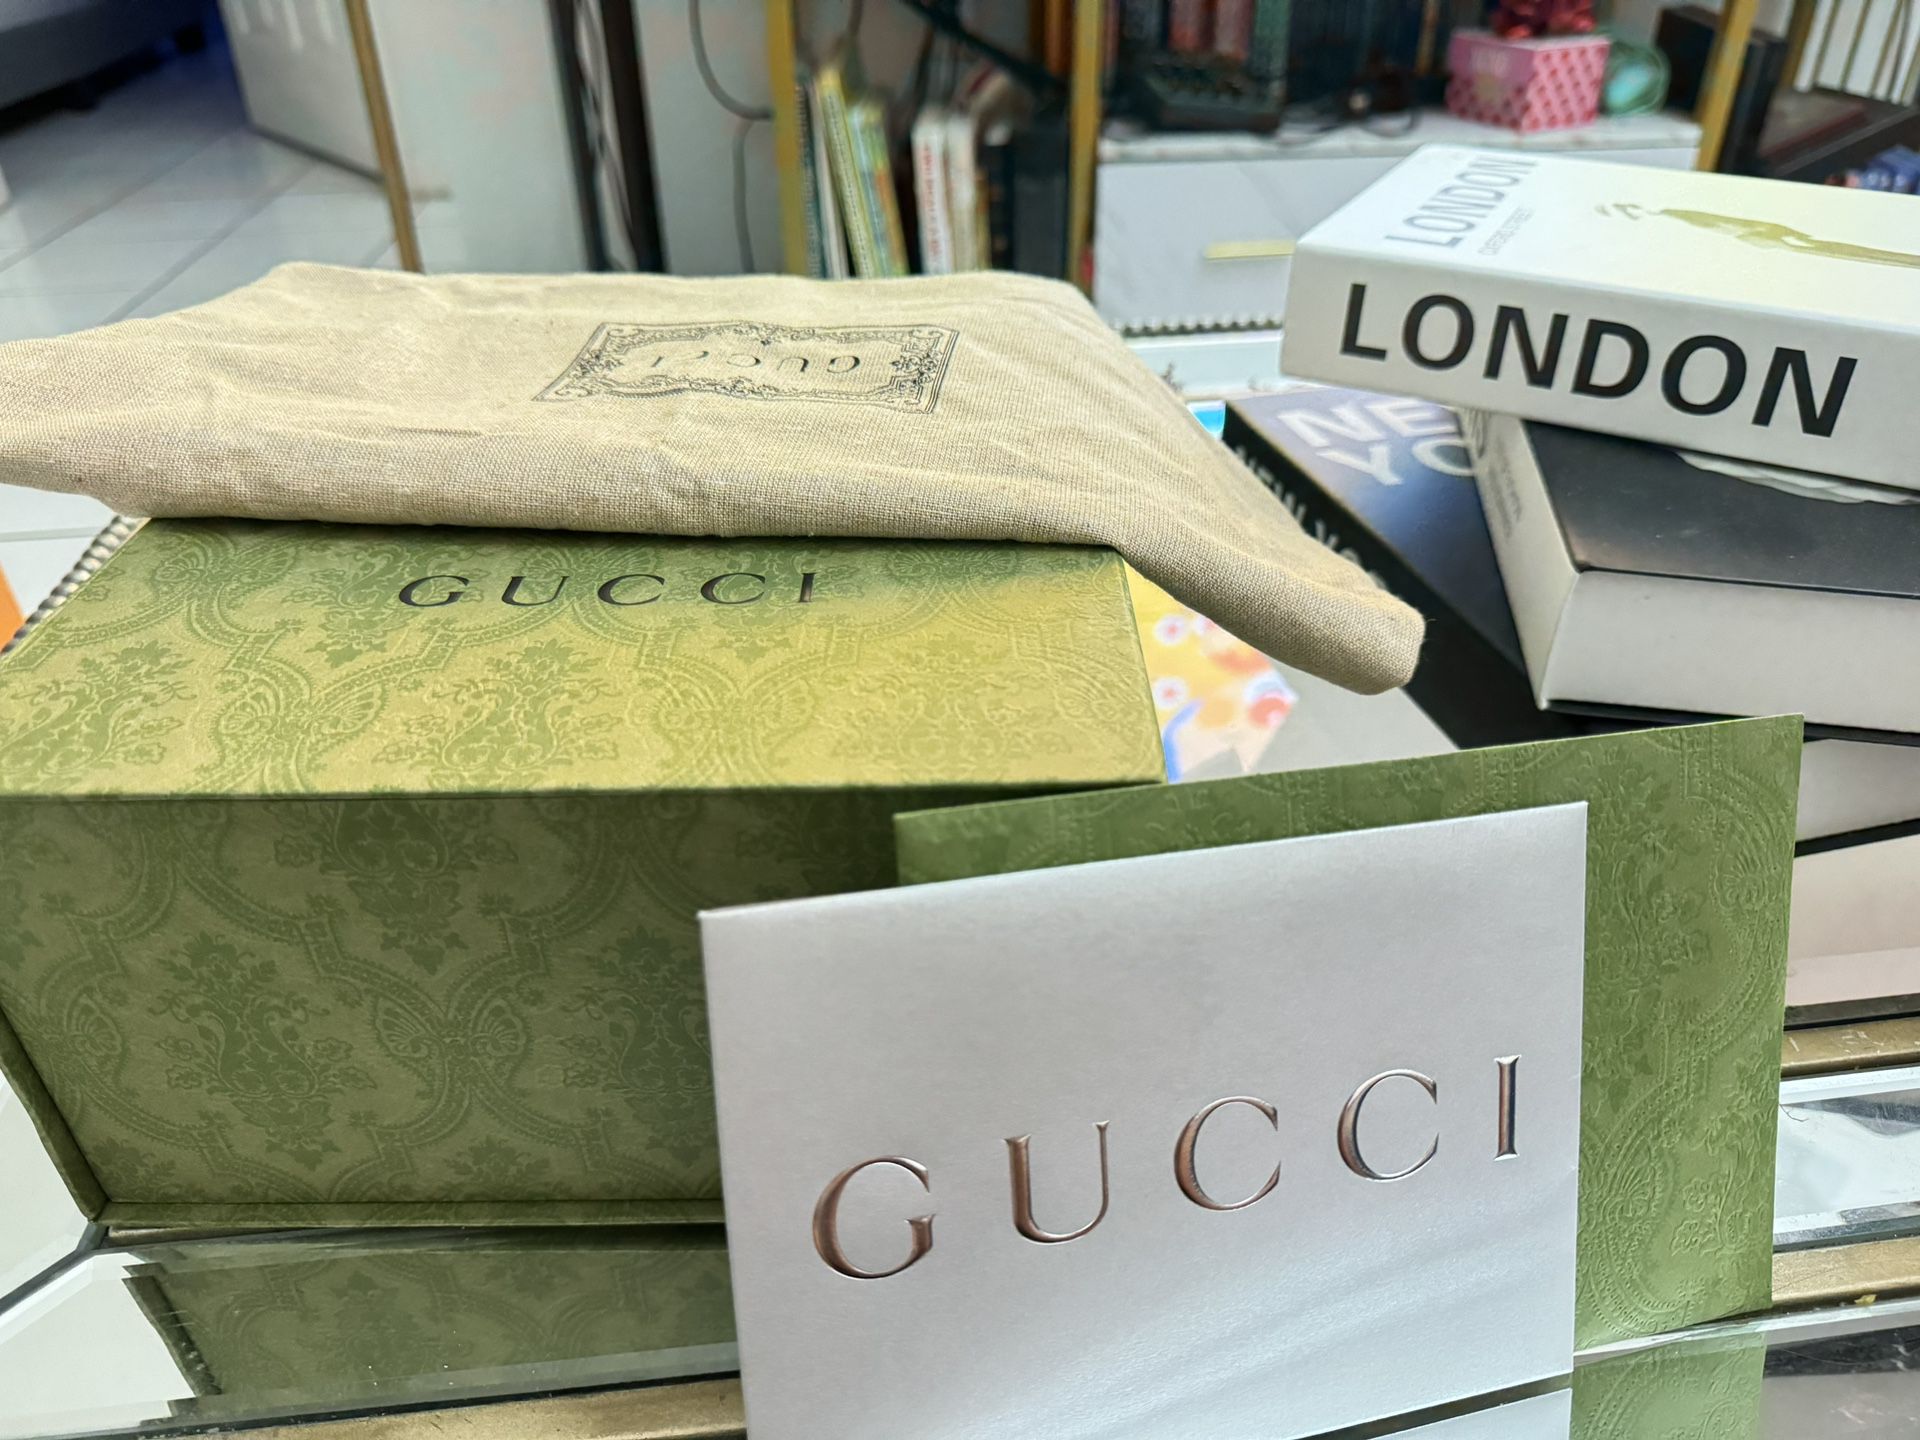 Box Gucci